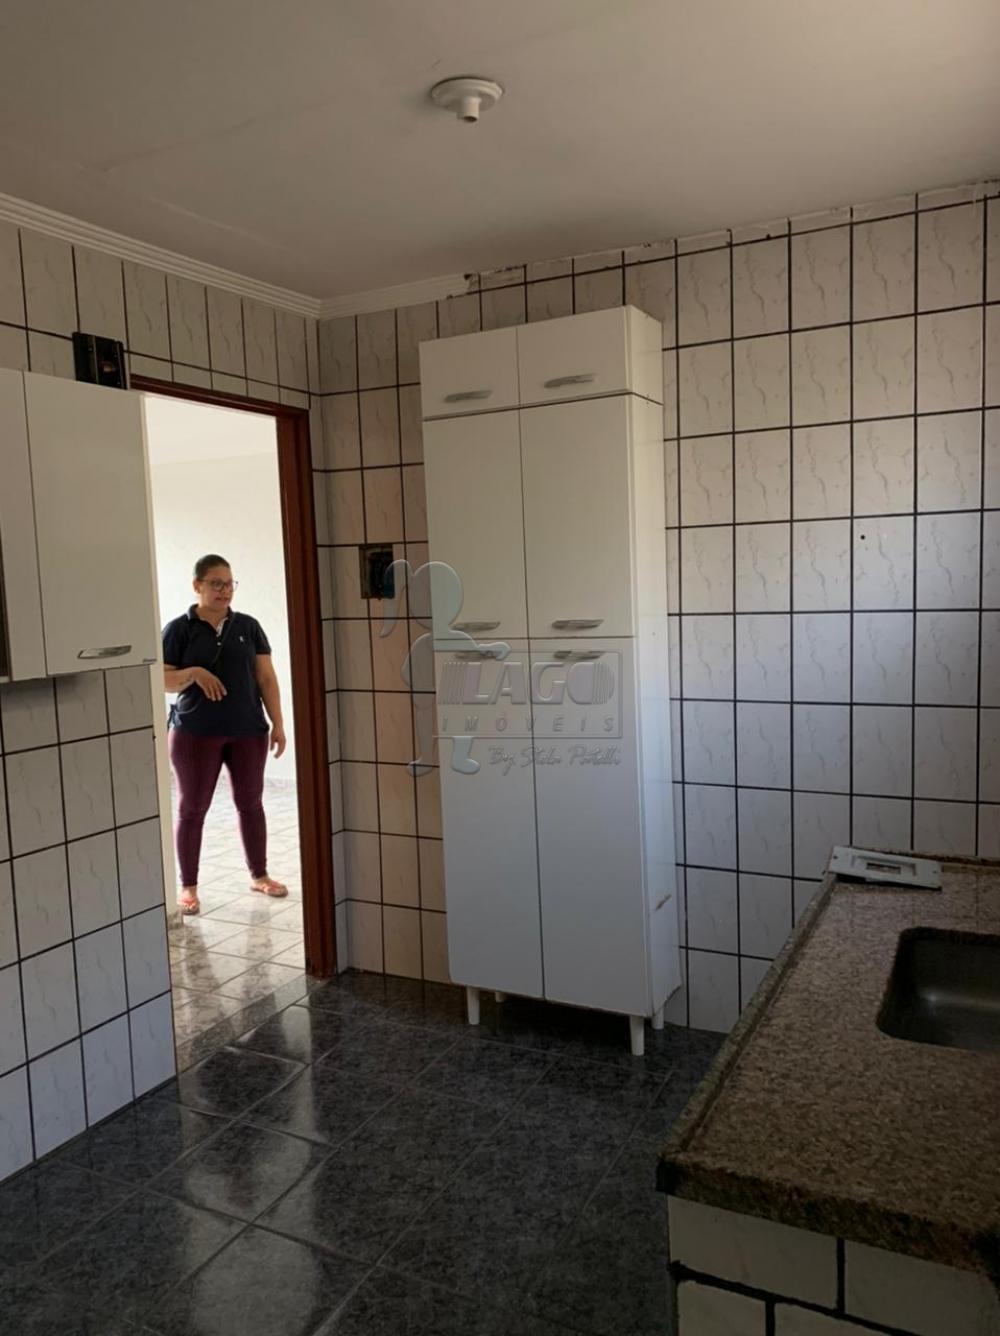 Comprar Apartamentos / Padrão em Ribeirão Preto R$ 138.000,00 - Foto 8